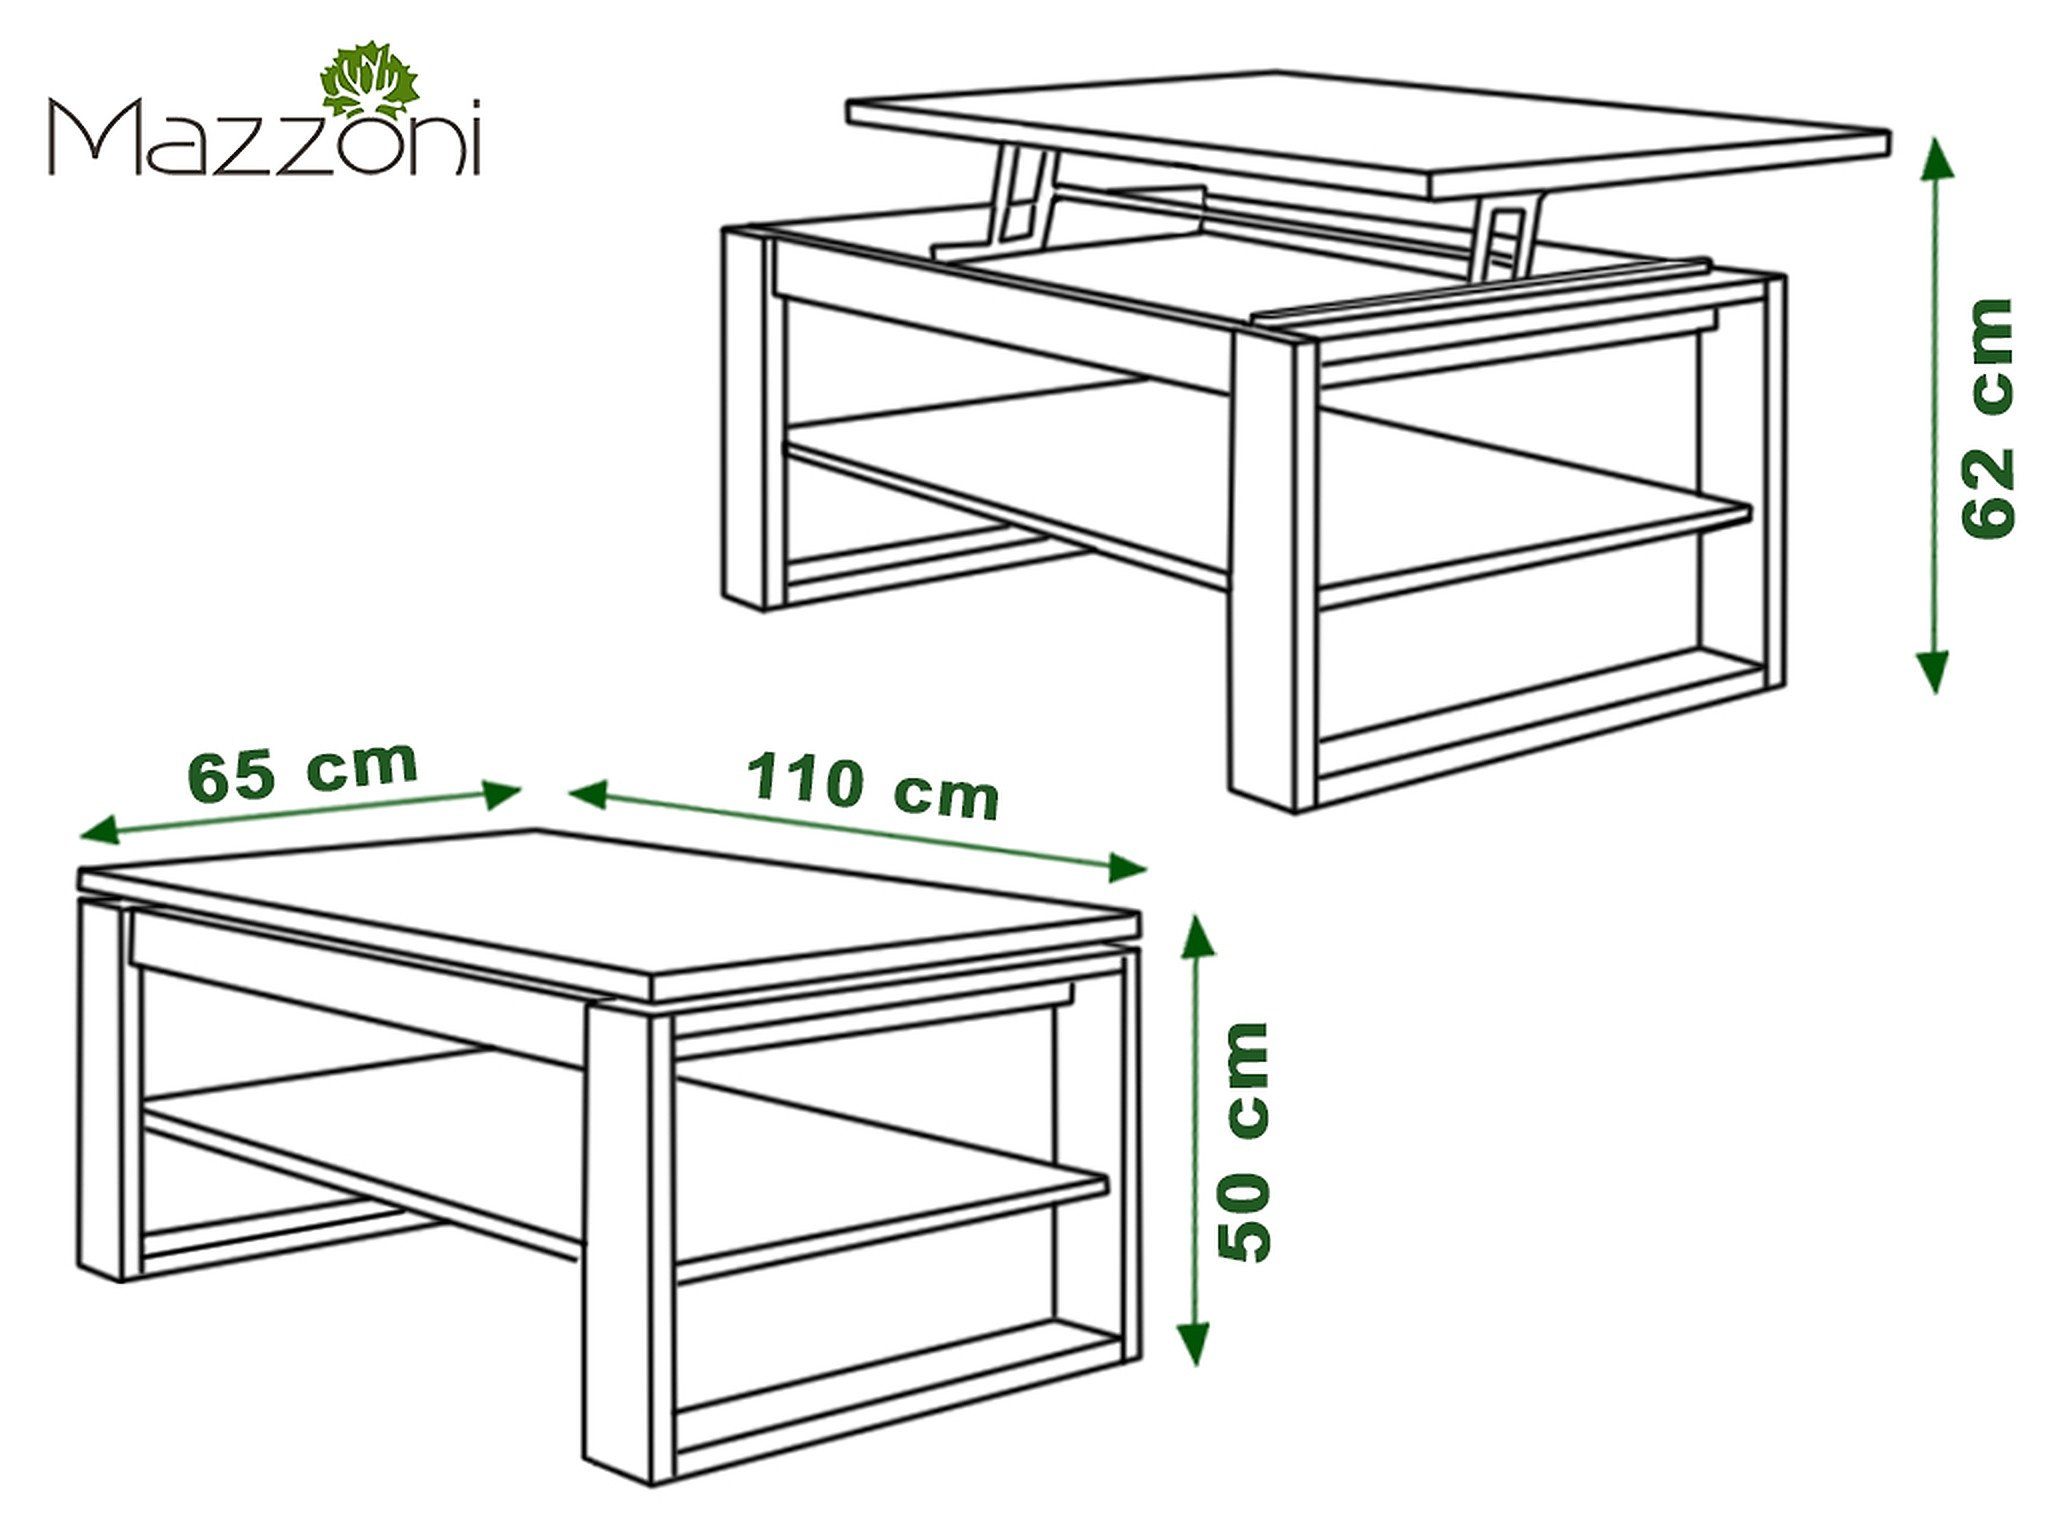 Multifunktion Weiß designimpex / dunkel Eiche Couchtisch Nuo Esstisch Ablage Tisch Arbeitstisch Couchtisch Design matt